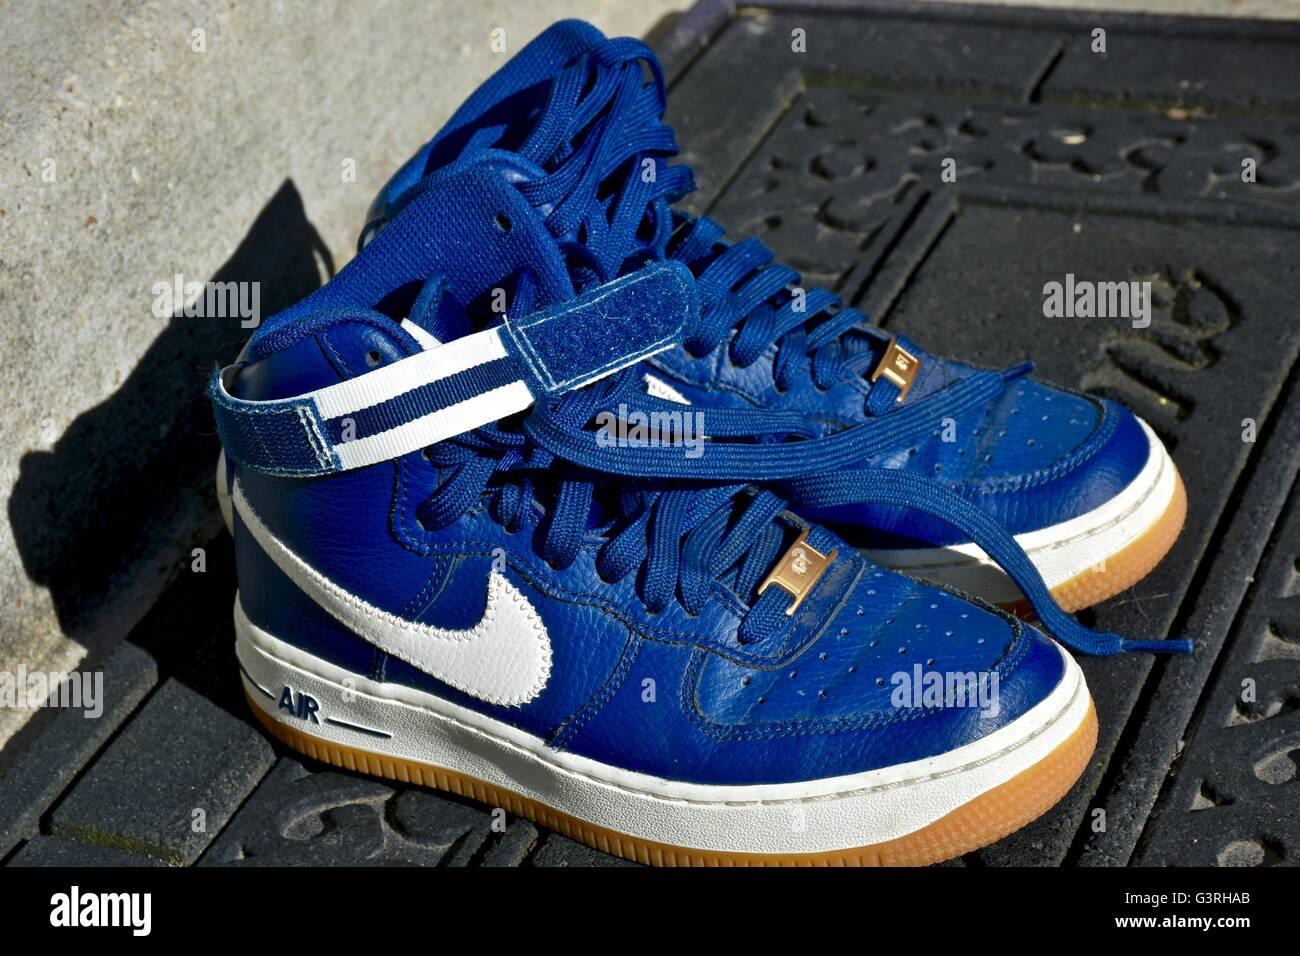 Ein paar blaue Nike Schuhe sitzen auf einer Fußmatte vor einem Haus Stockfoto